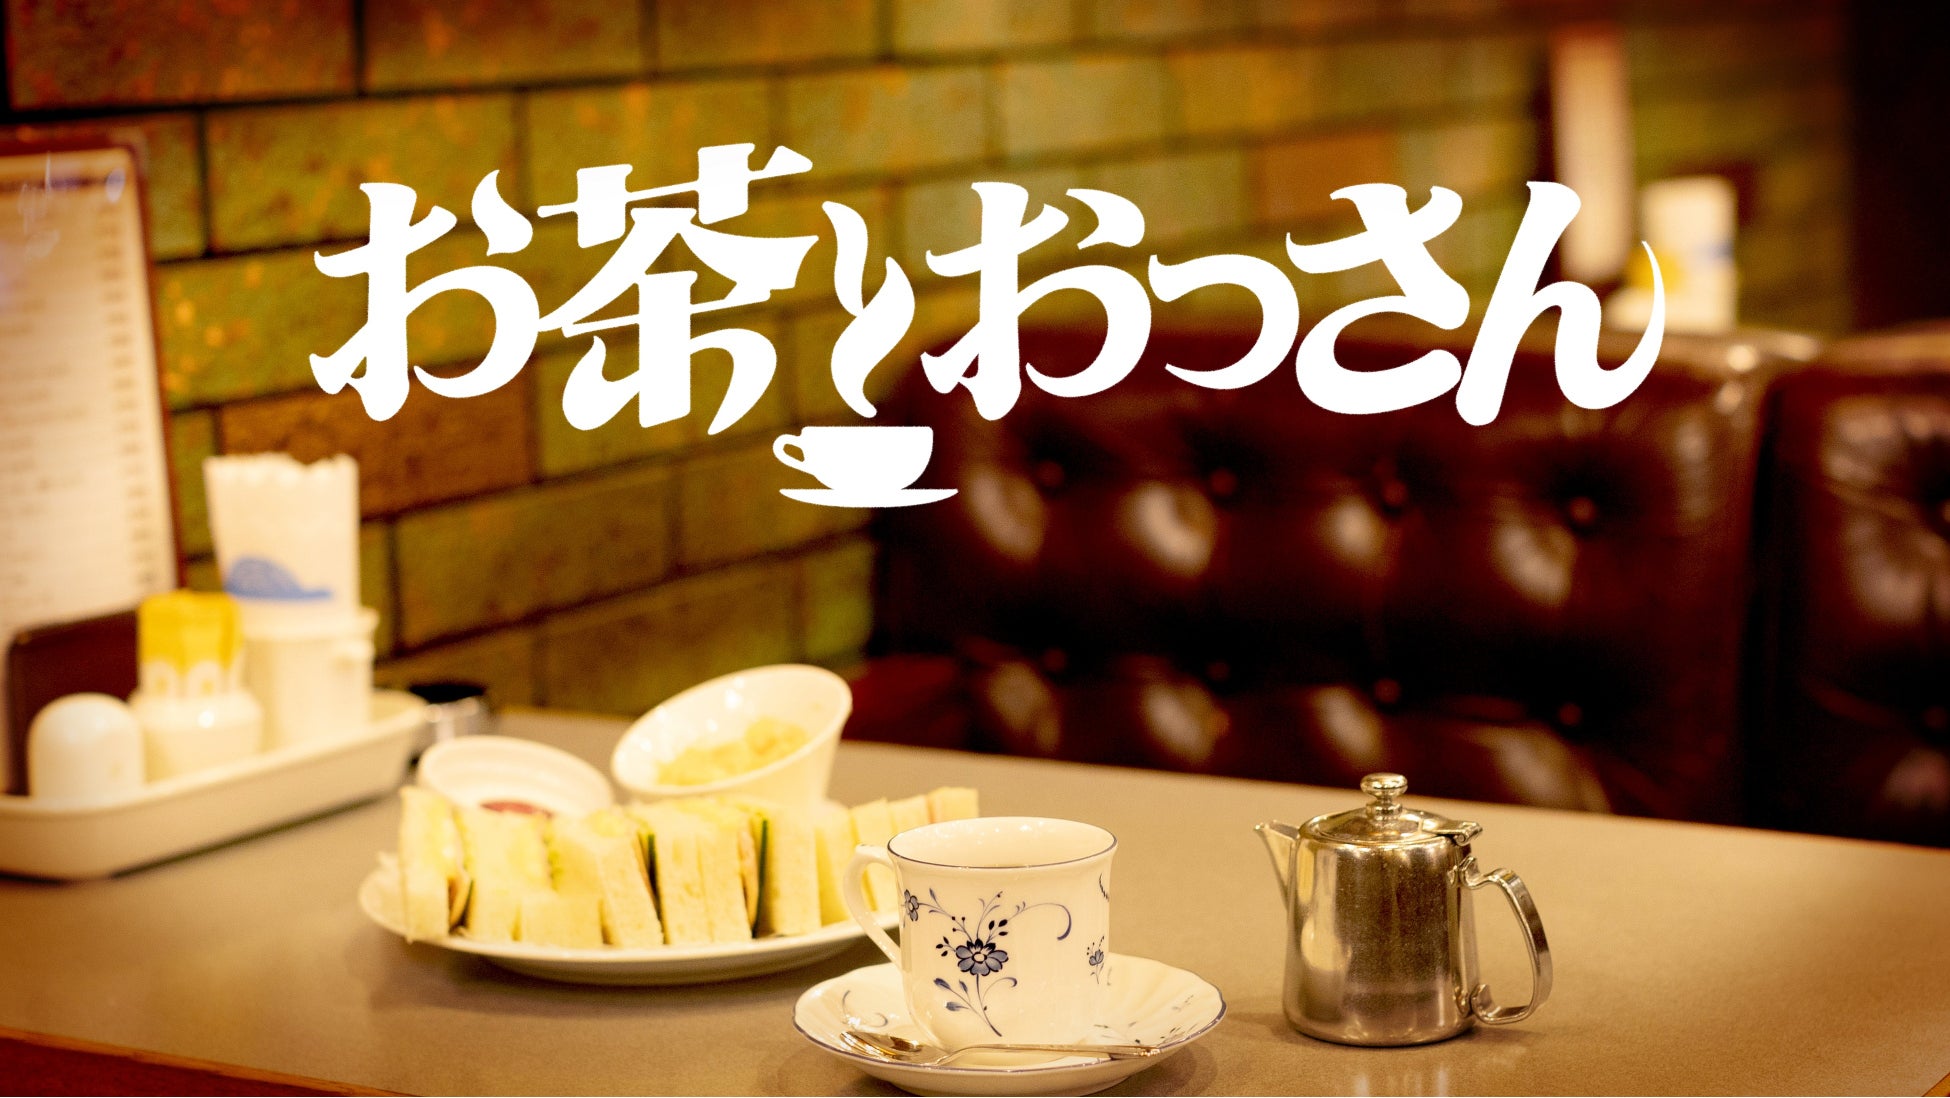 松本人志、ある社長から「『松本人志カード』つくりませんか？」と提案されて…「お茶とおっさん」#14  のサブ画像3